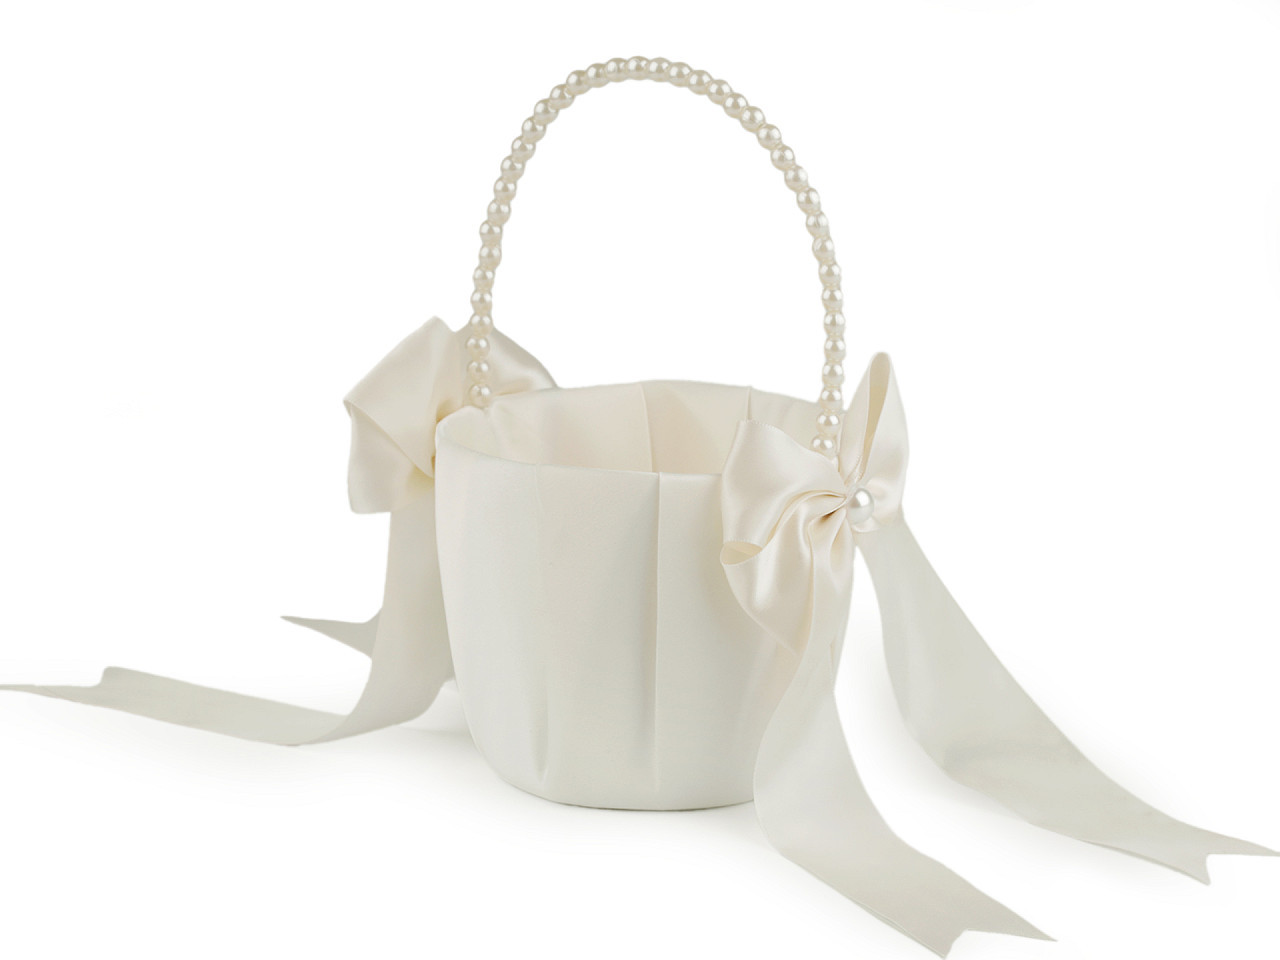 Svatební saténový košíček pro družičky, s perlami, barva 2 krémová nejsvět.